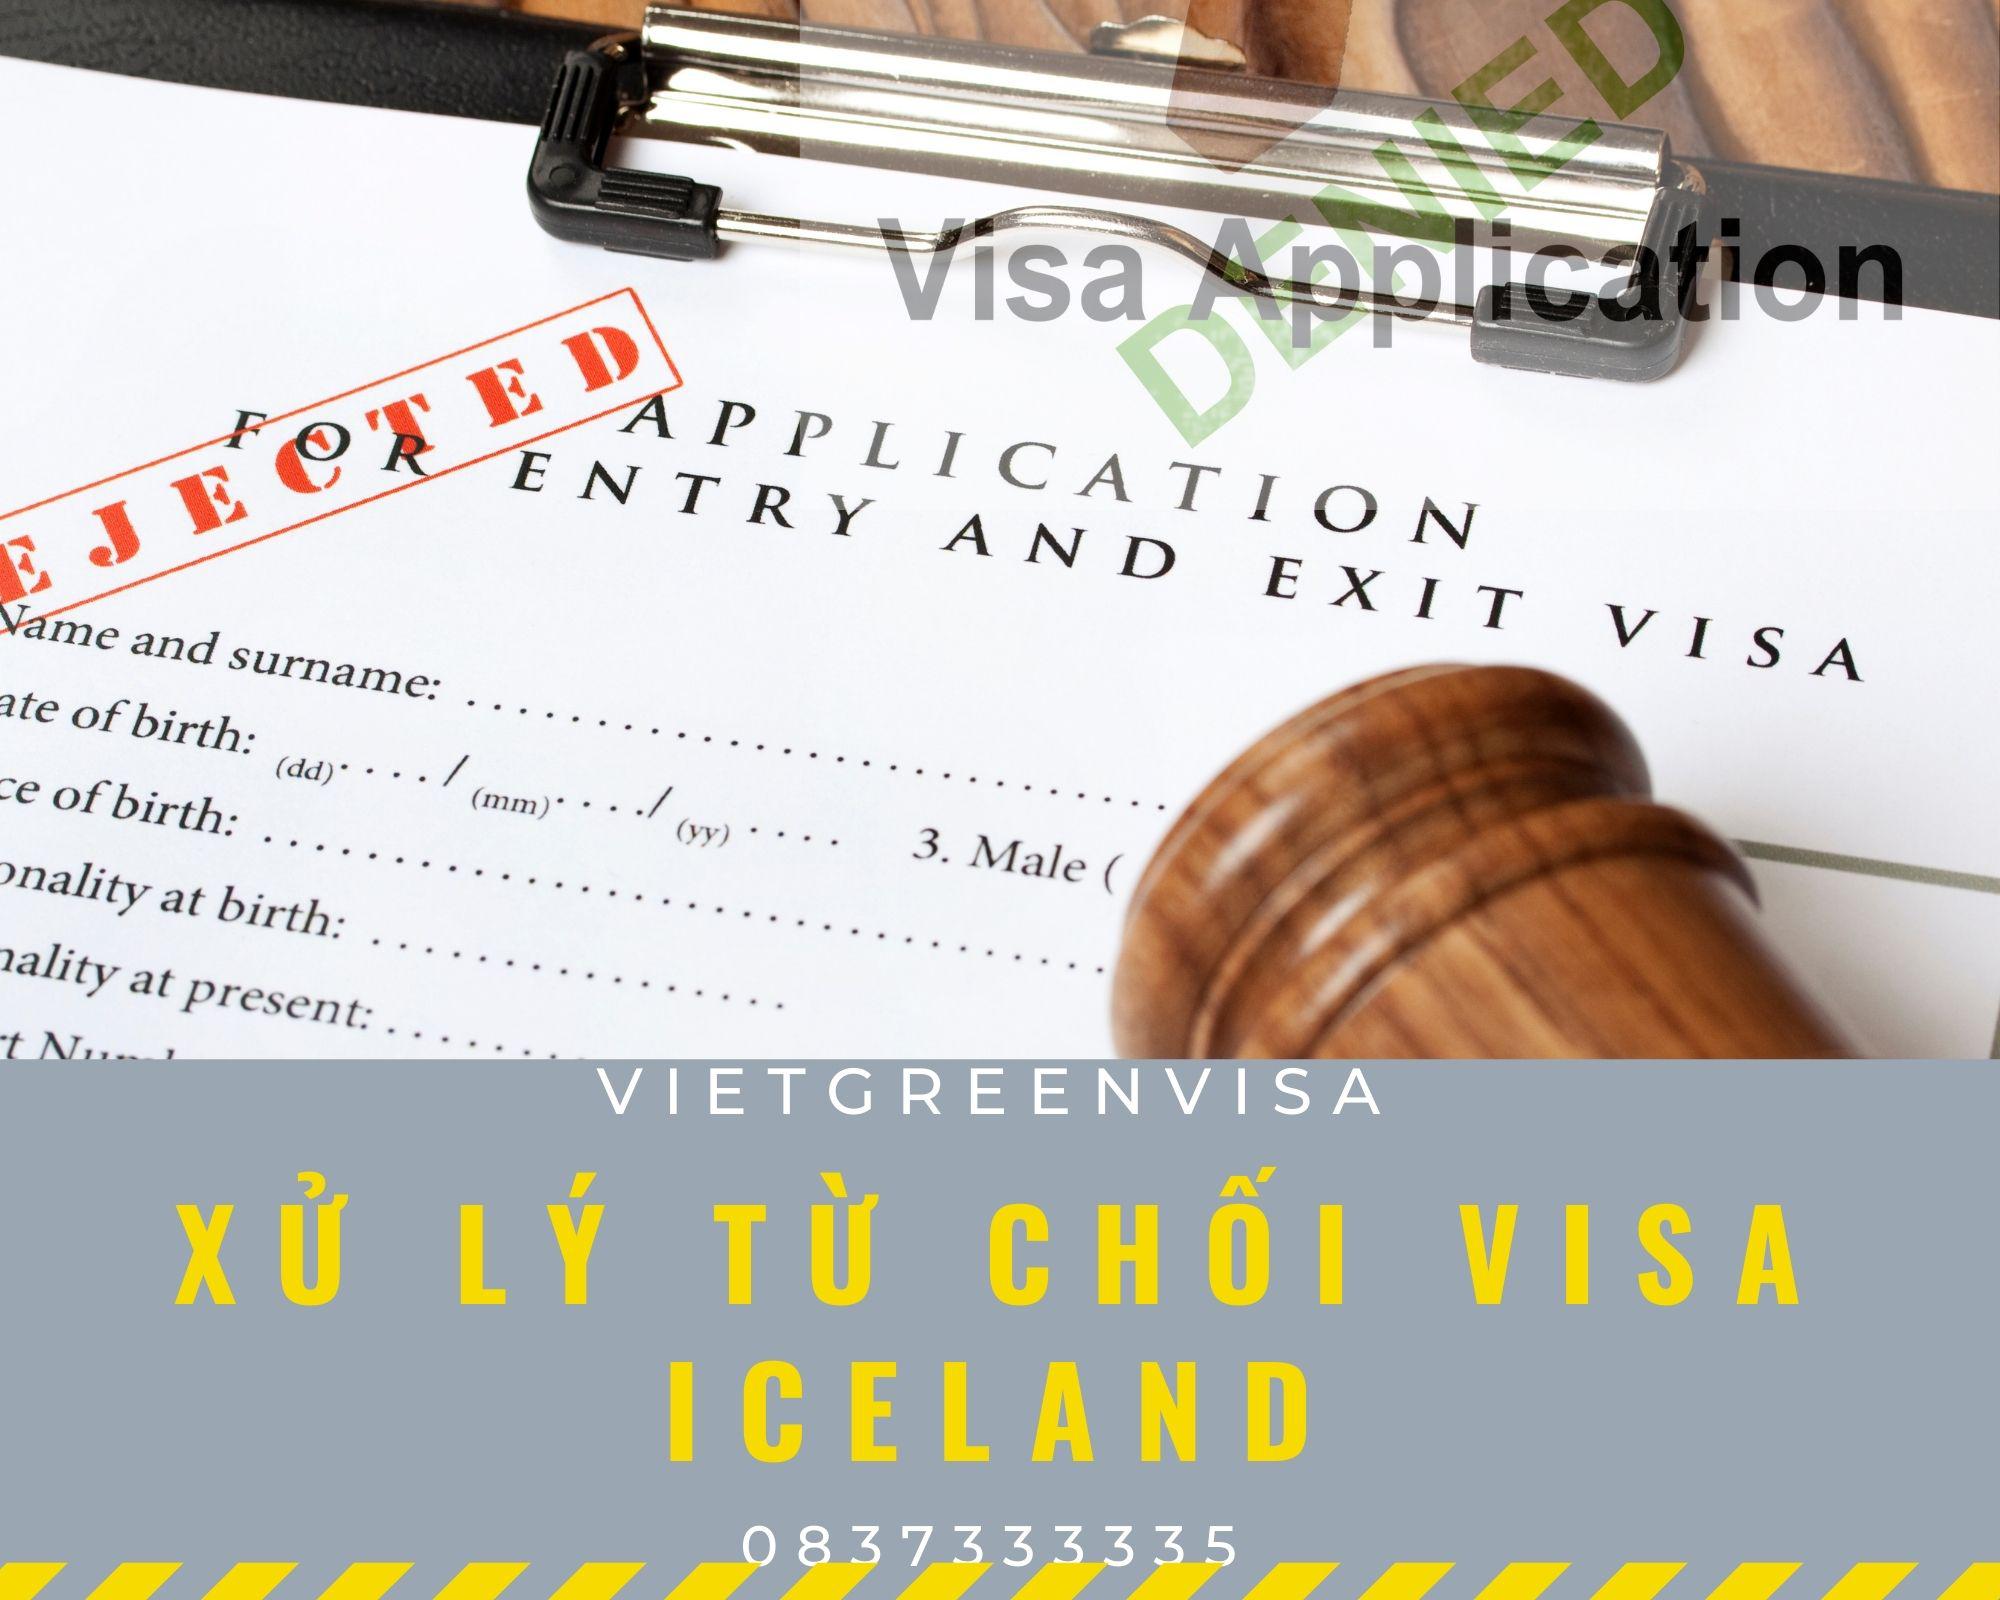 Dịch vụ xử lý visa Iceland bị từ chối nhanh rẻ